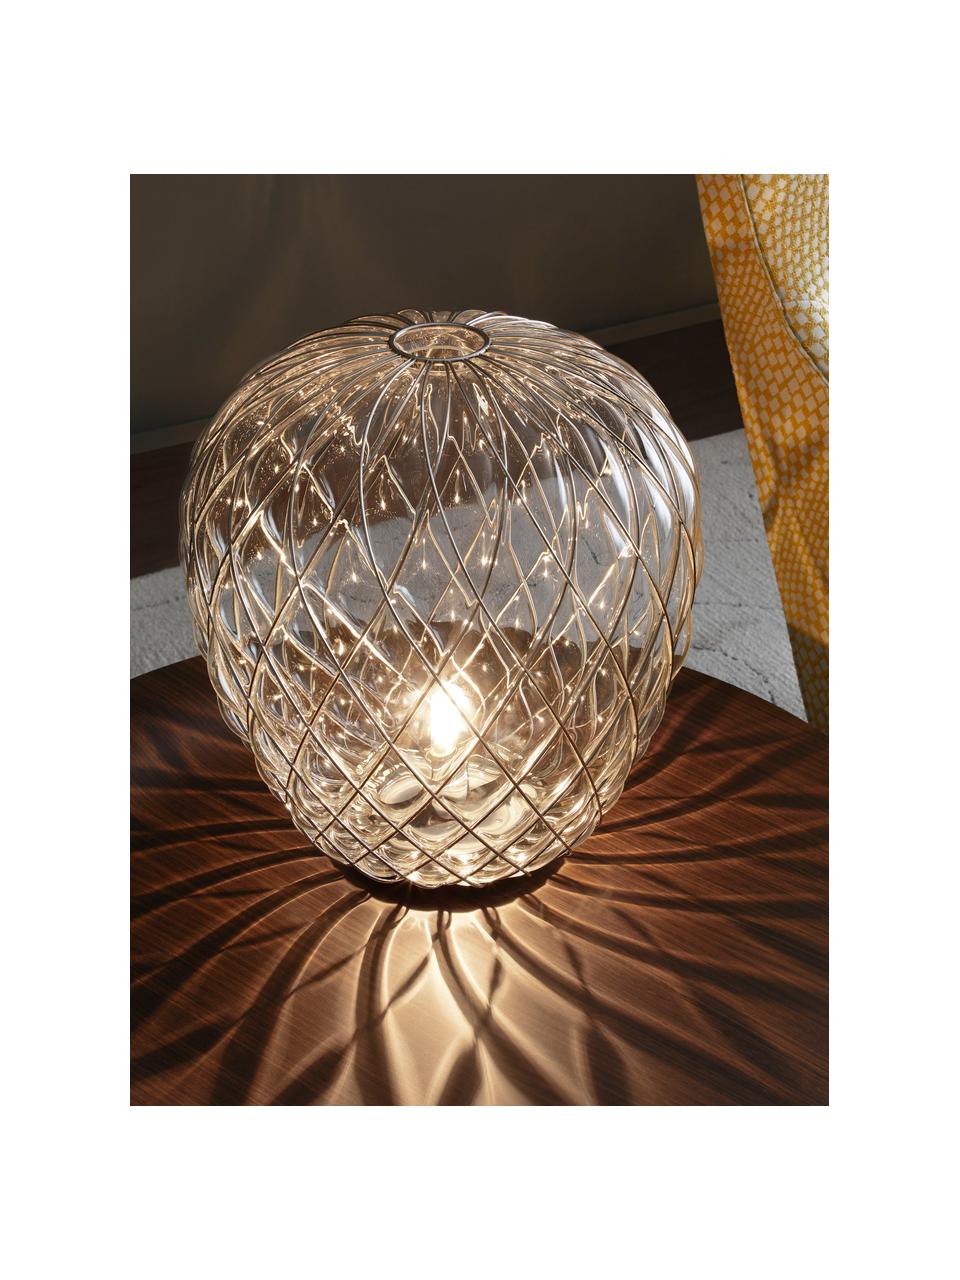 Velká stolní lampa Pinecone, ručně vyrobená, Transparentní, stříbrná, Ø 50 cm, V 52 cm